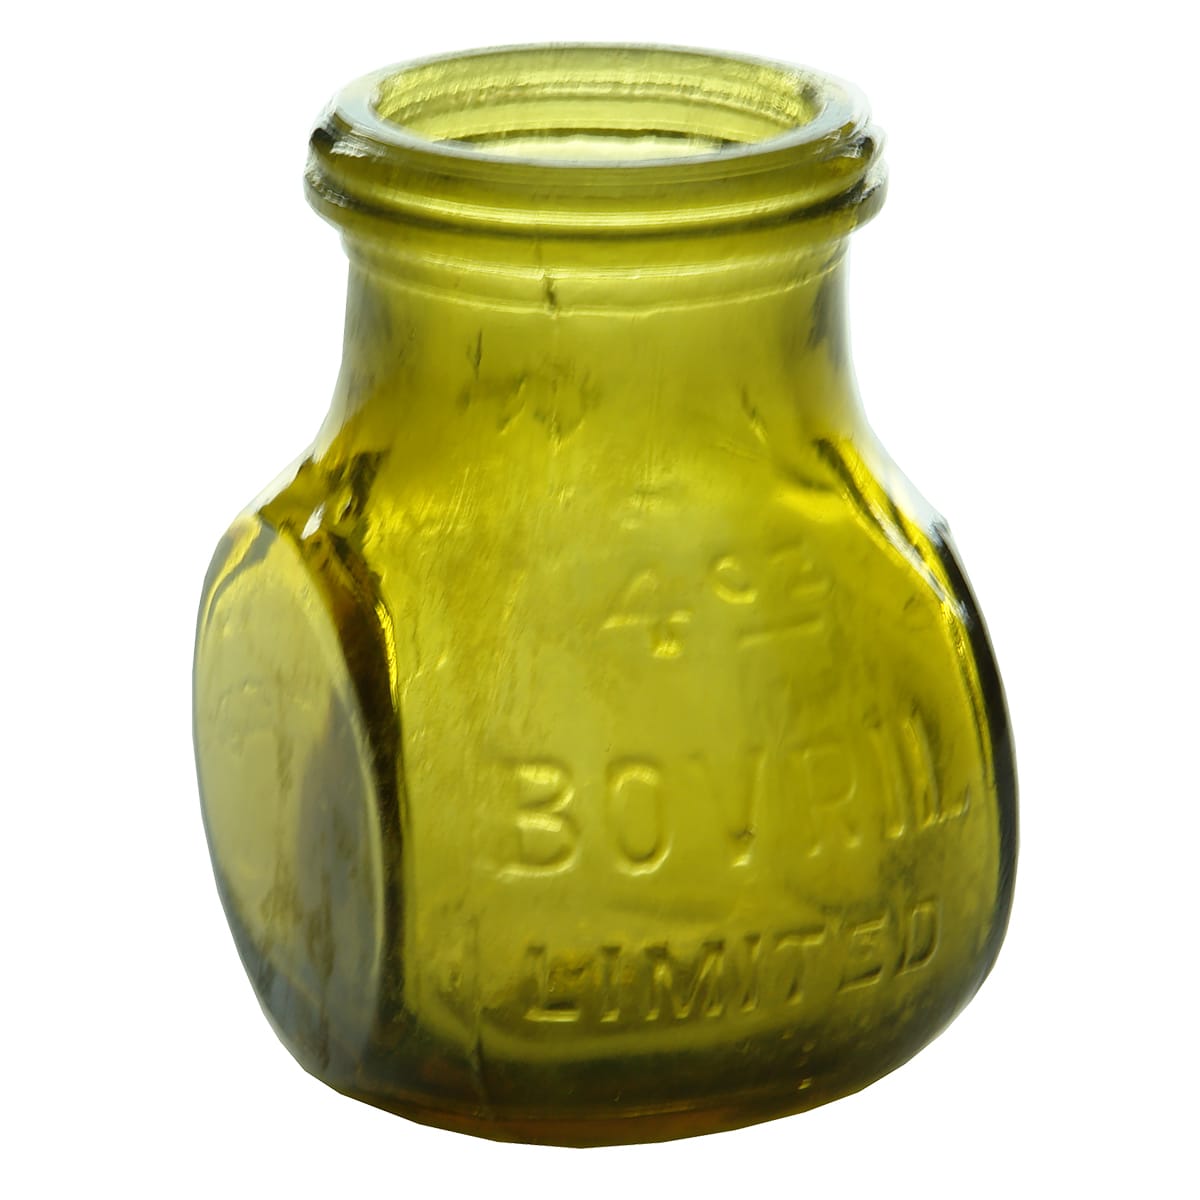 Bovril Jar. 4 oz. Yellow colour.